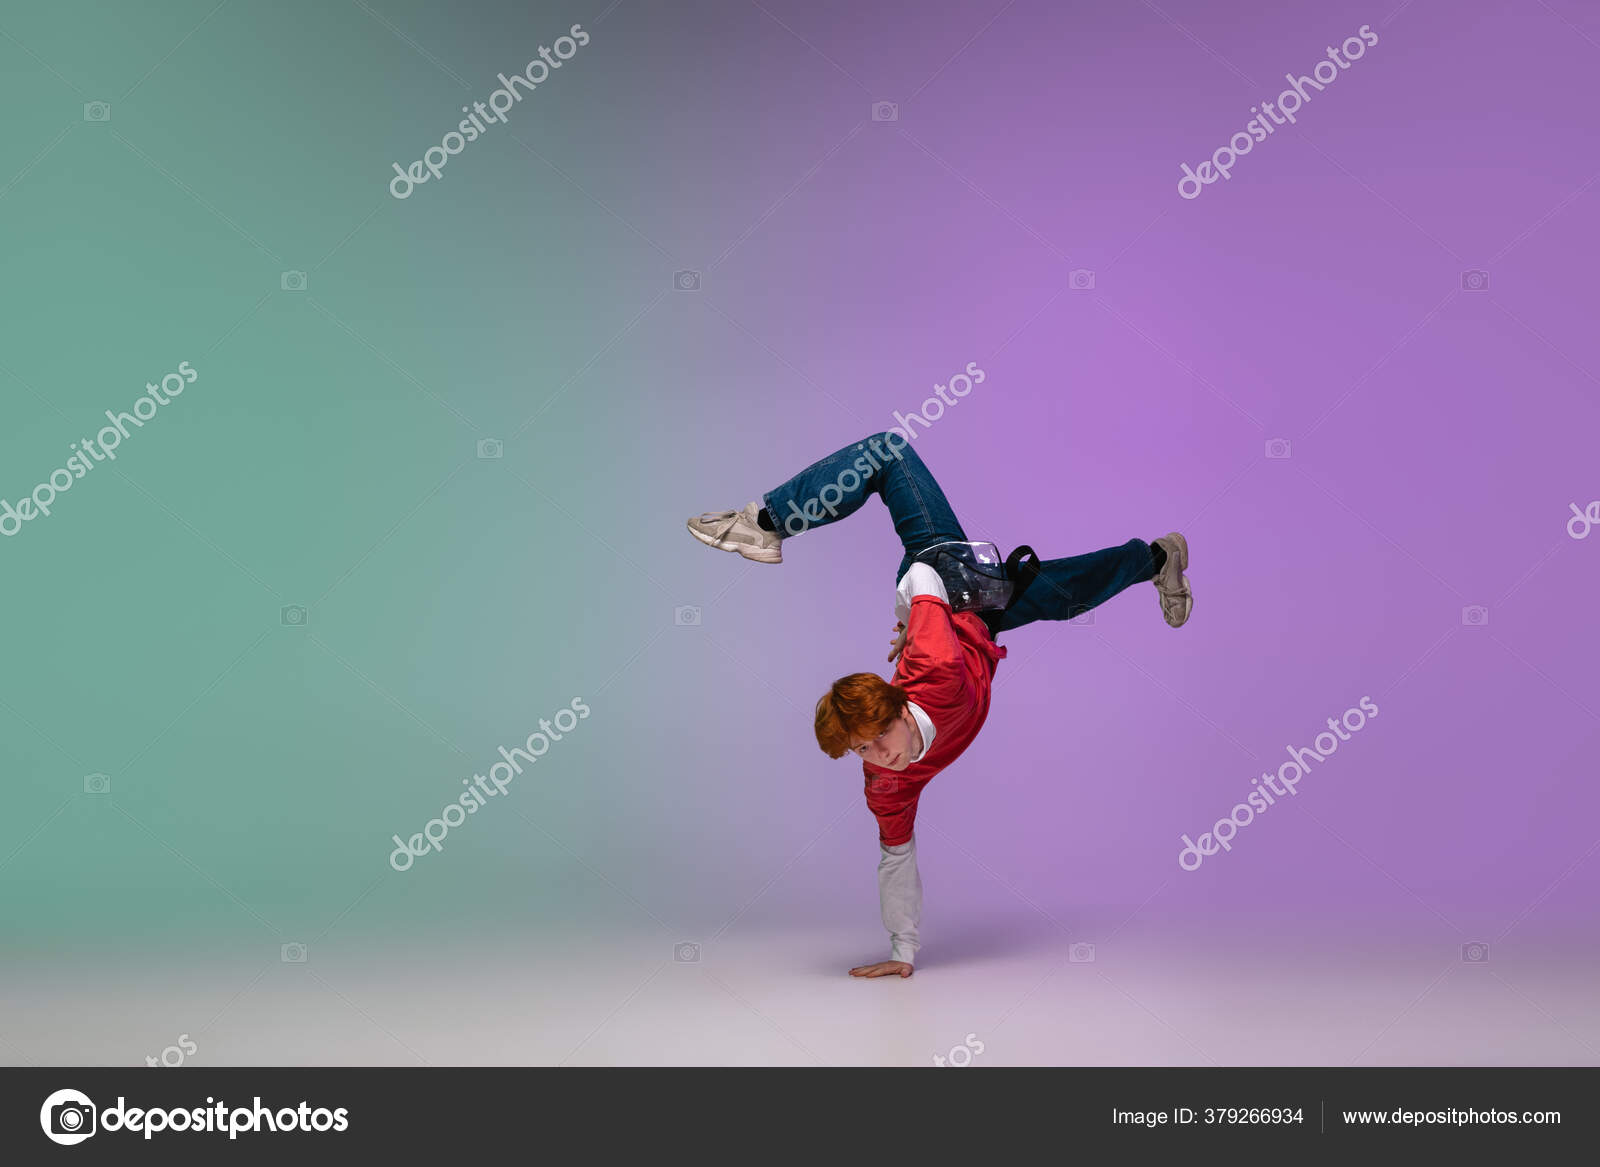 anmodning sikkerhed samlet set Dreng danser hip-hop i stilfuldt tøj på gradient baggrund på dansehallen i  neonlys. — Stock-foto © vova130555@gmail.com #379266934